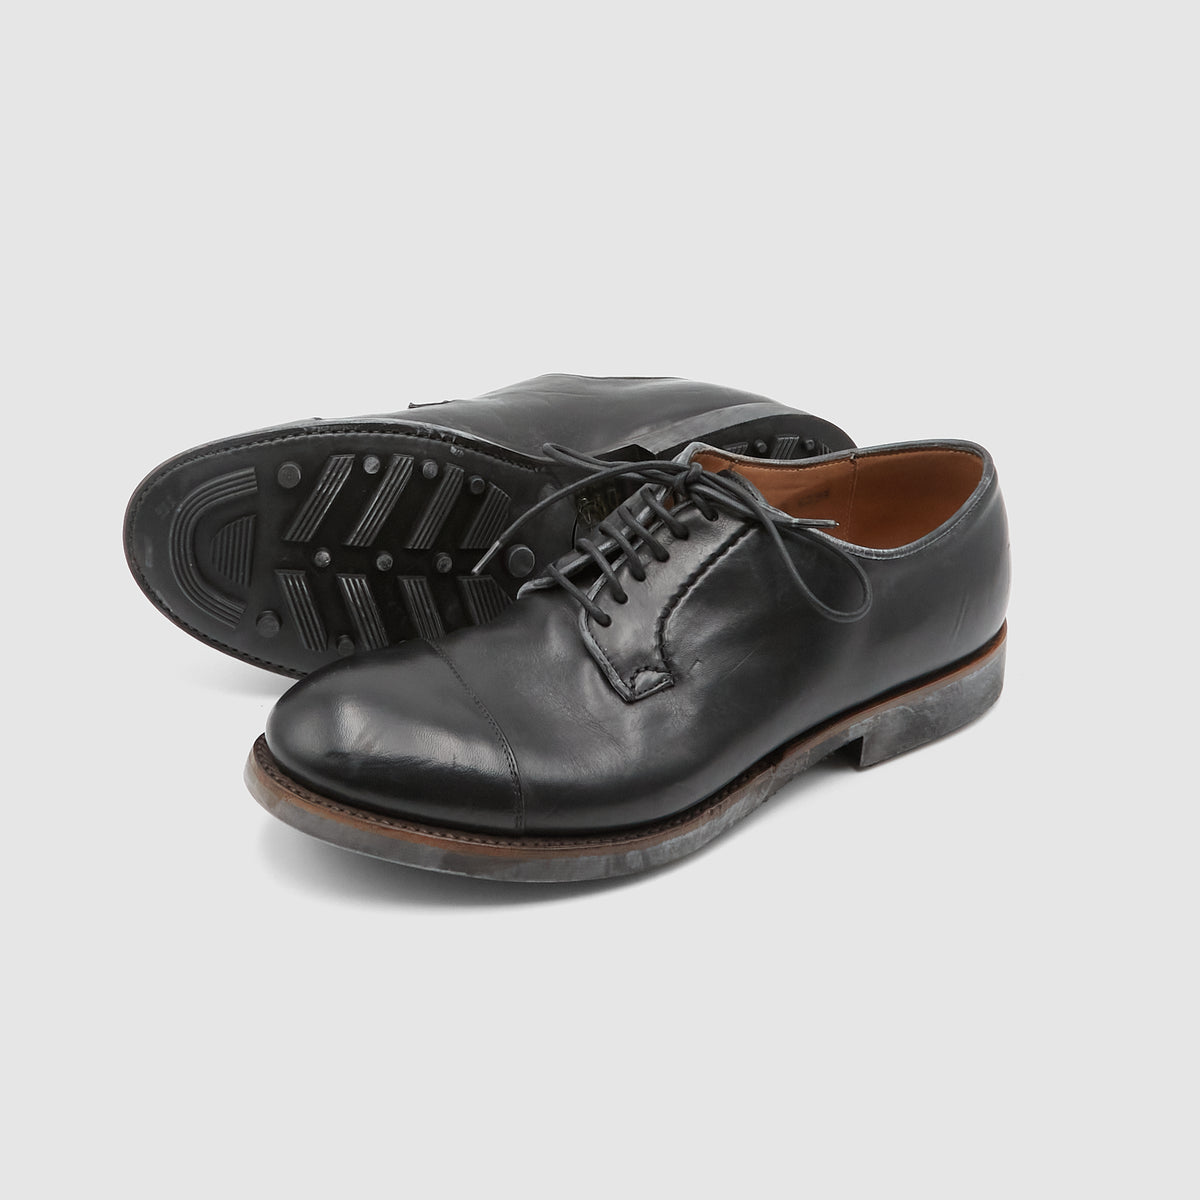 Silvano Sassetti Classic Oxford Shoe with Commando Sole